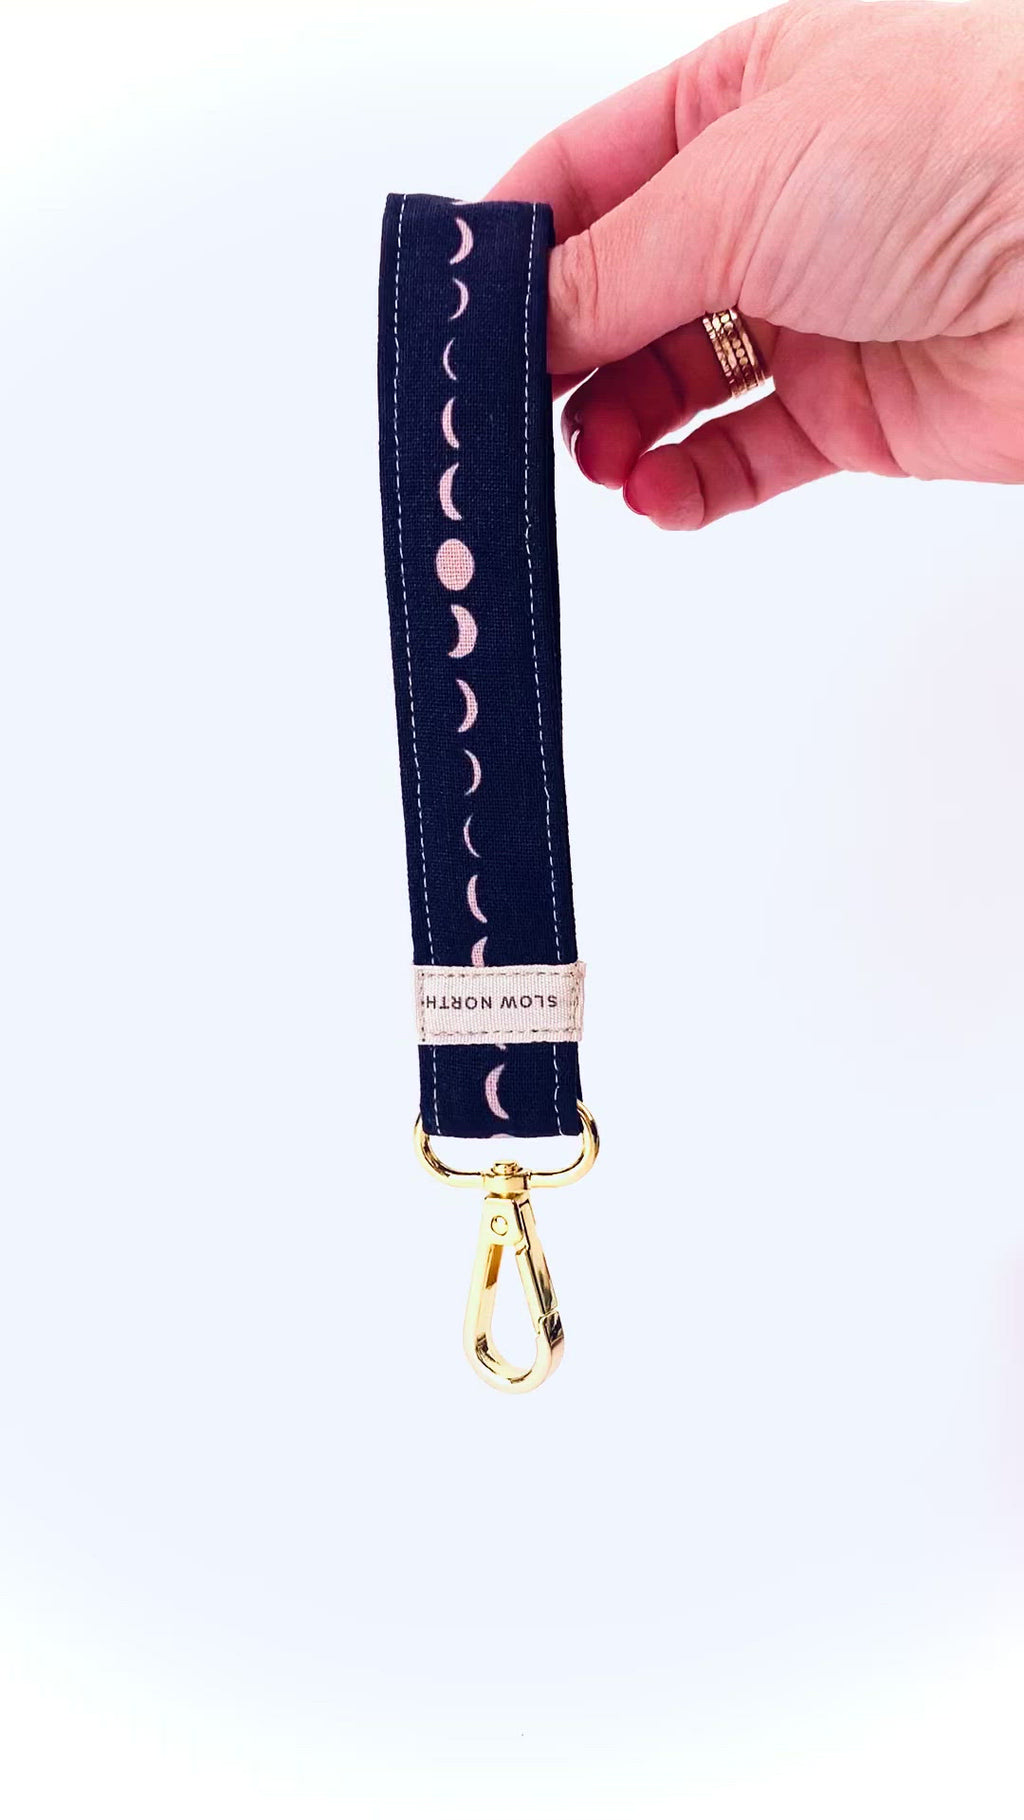 Just Gorgeous Studio Handmade Louis Vuitton Canvas Keychain Wrist Strap